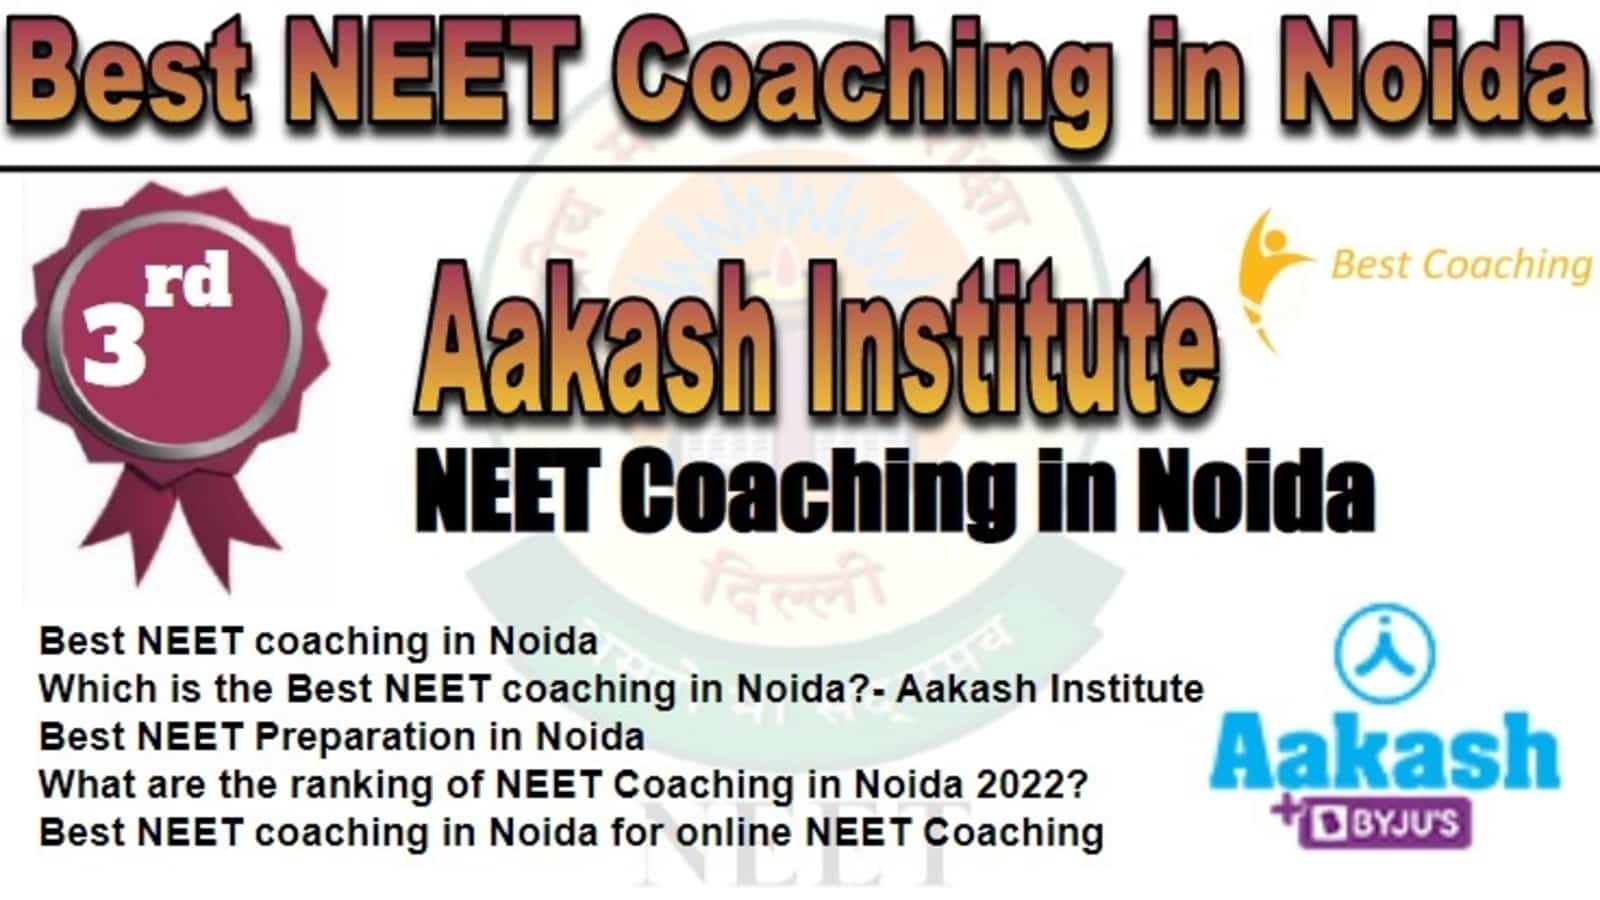 Rank 3 Best NEET Coaching in Noida